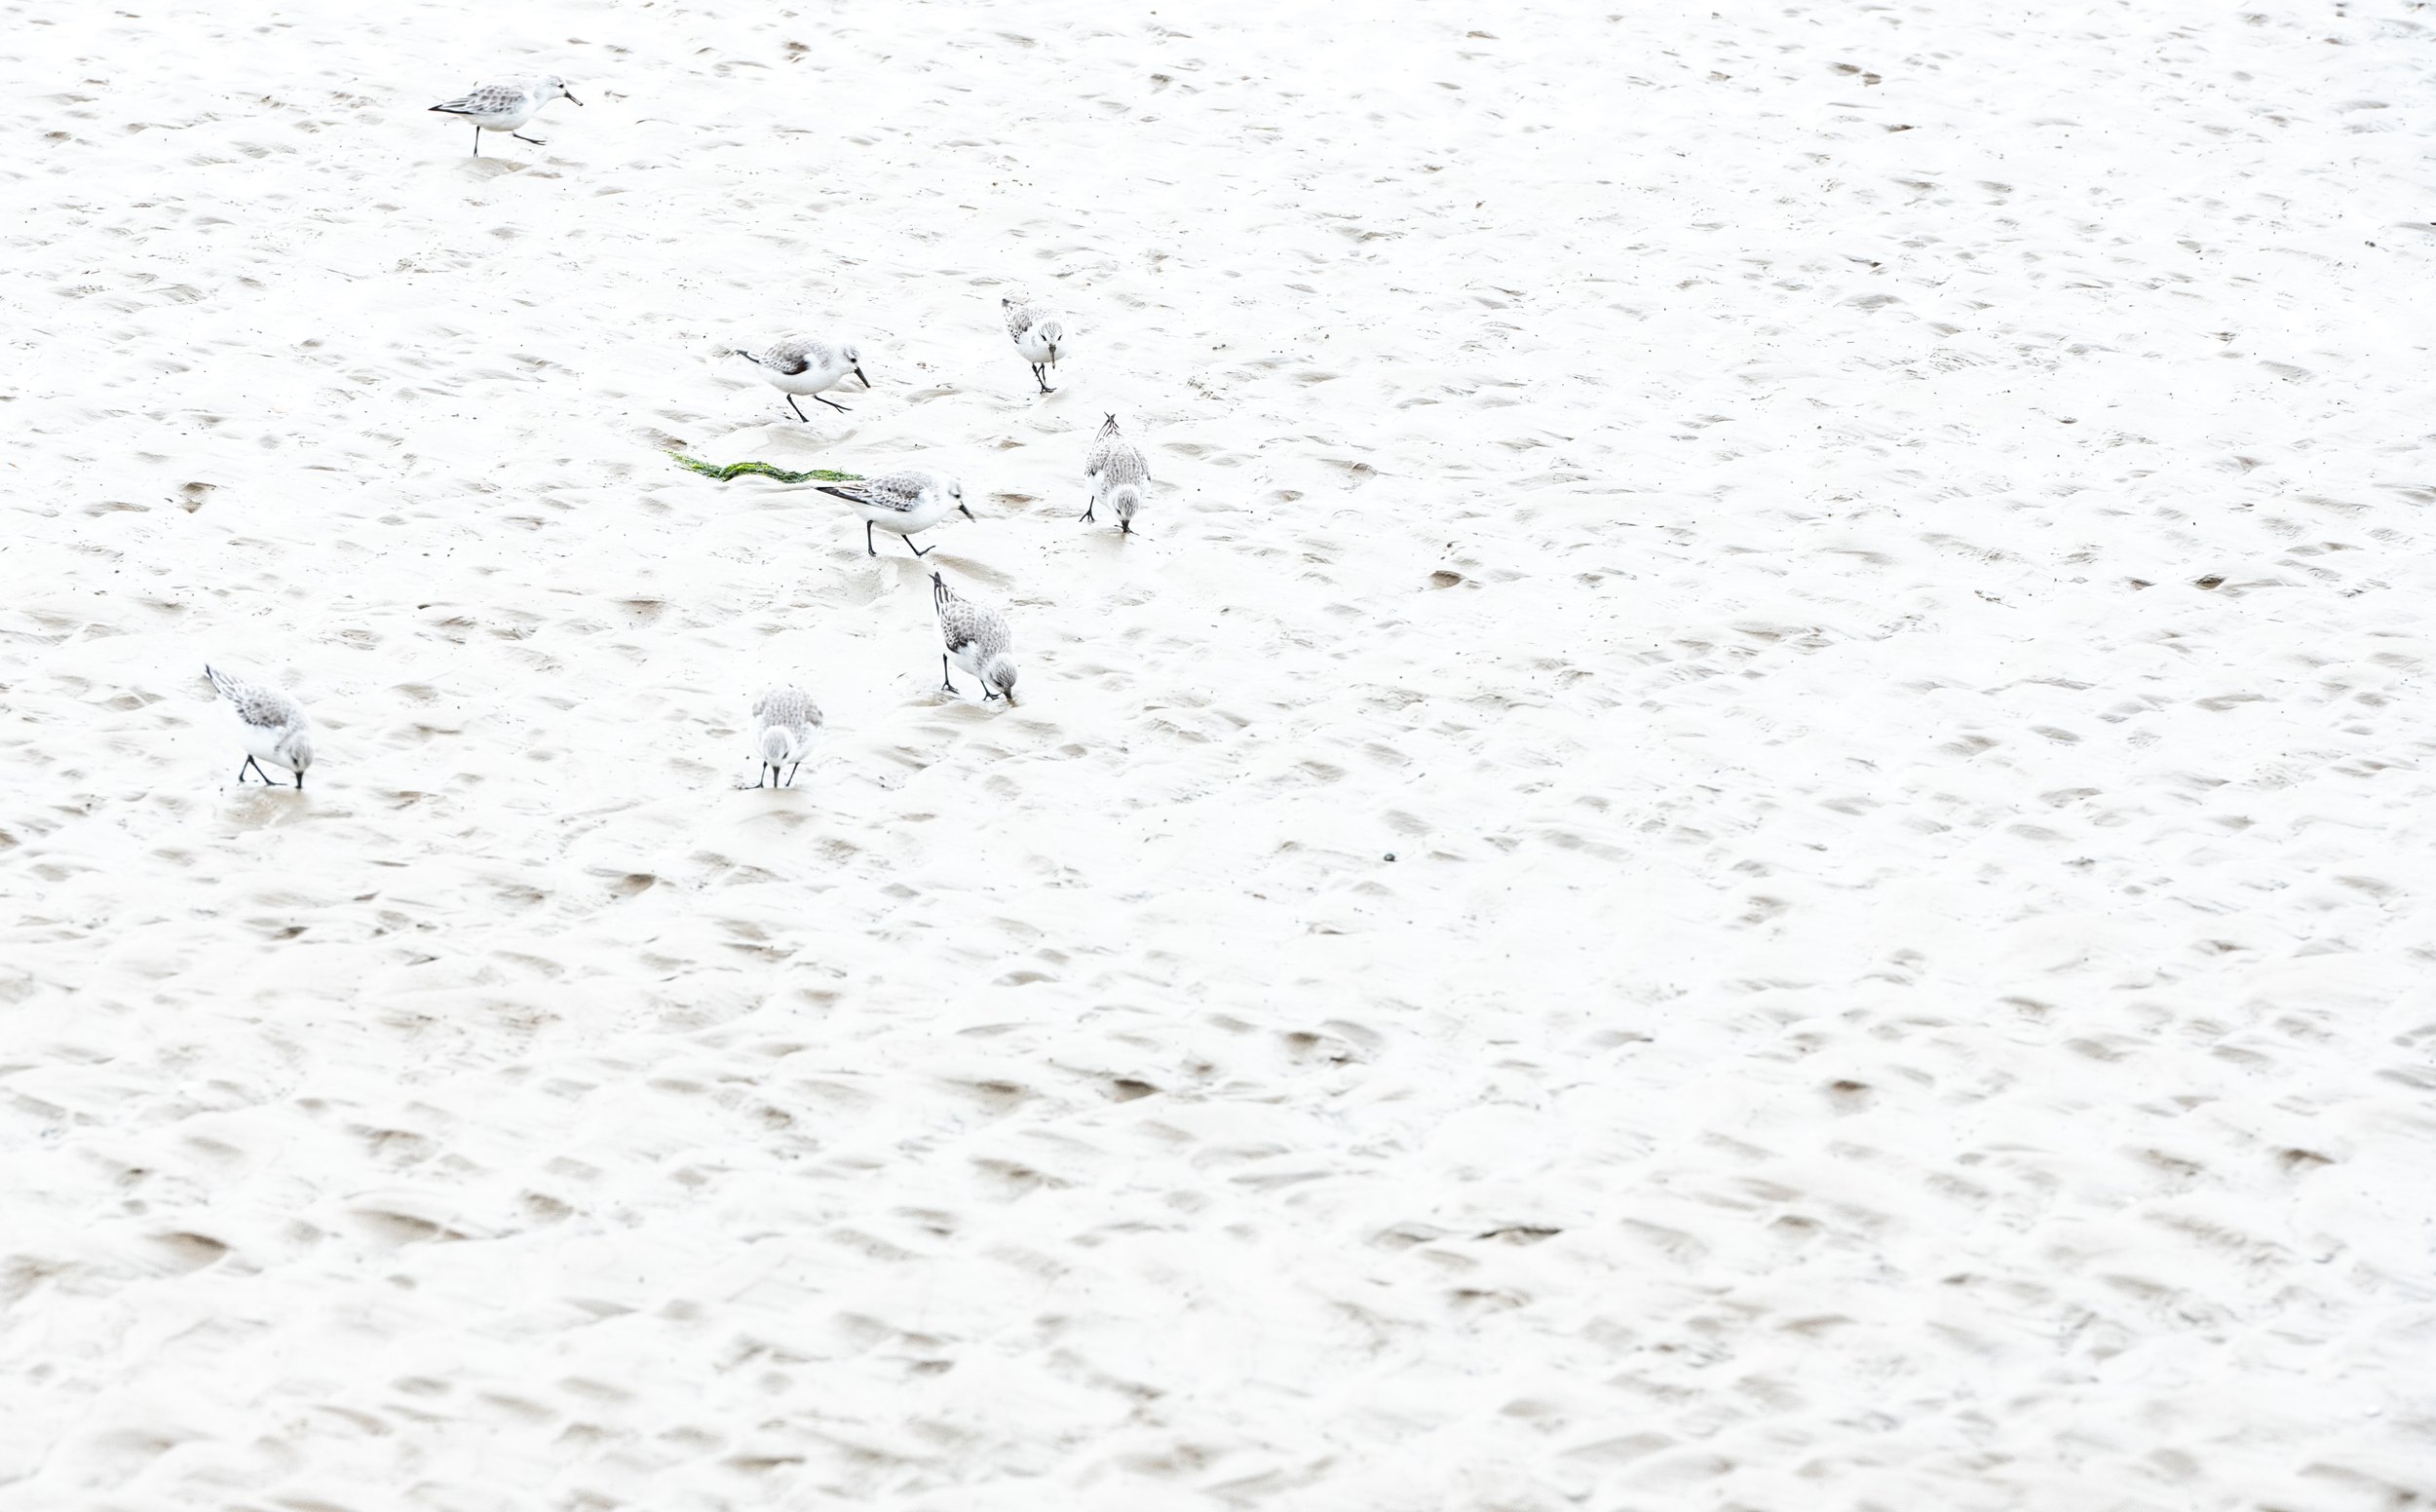  Eine kleine Gruppe Sanderlinge sucht auf dem trockengefallenen Watt nach Futter.  Mit geschlossener Blende und starker Überbelichtung wird das Bild “flacher” und nur der grüne Seetang sticht noch aus der grau-weißen Fläche heraus. 